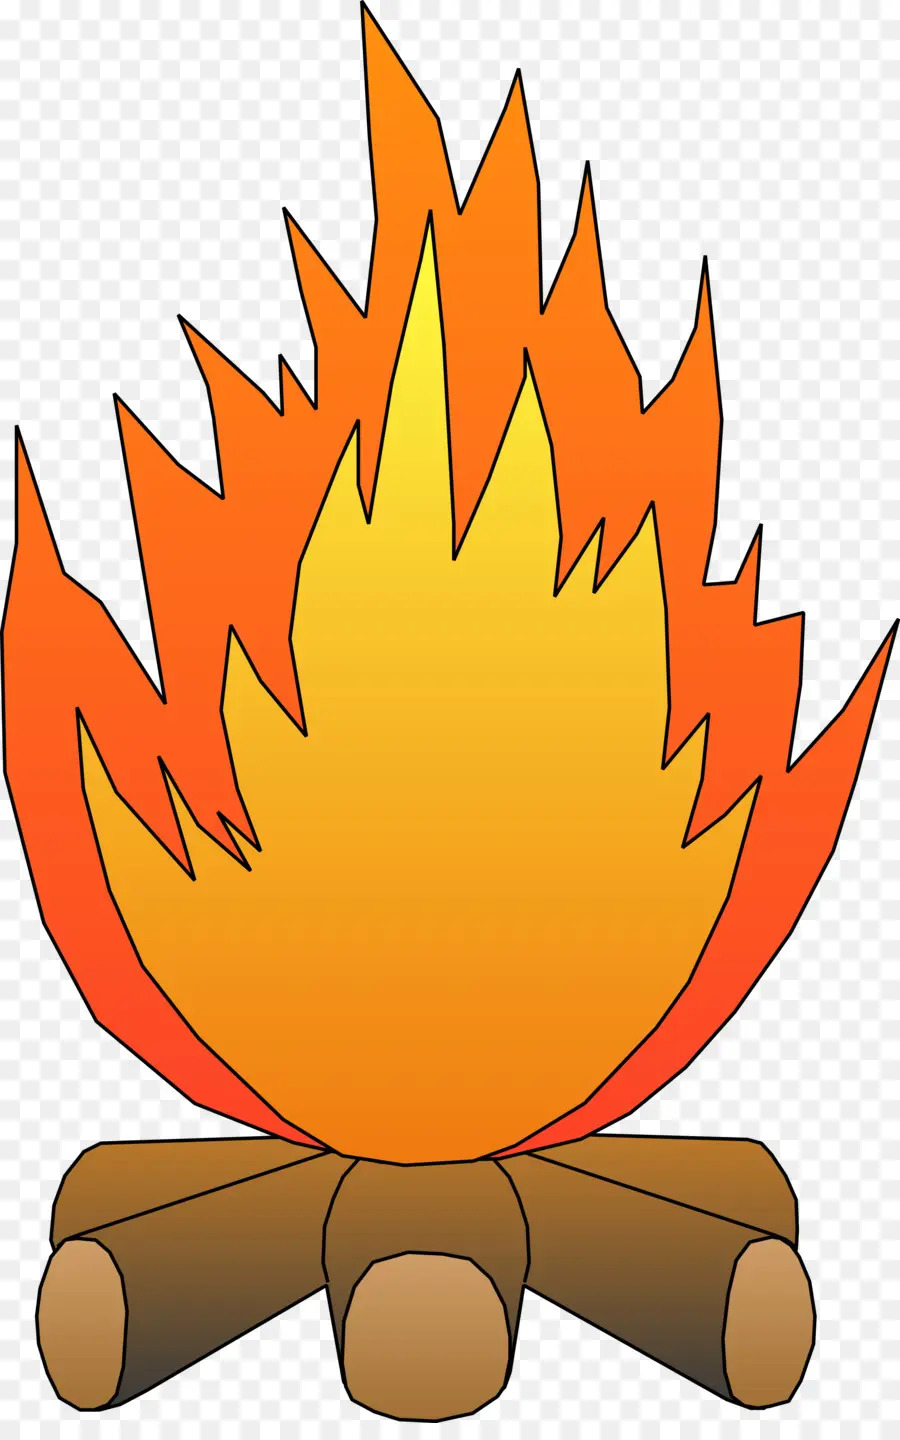 Api，Api Unggun PNG